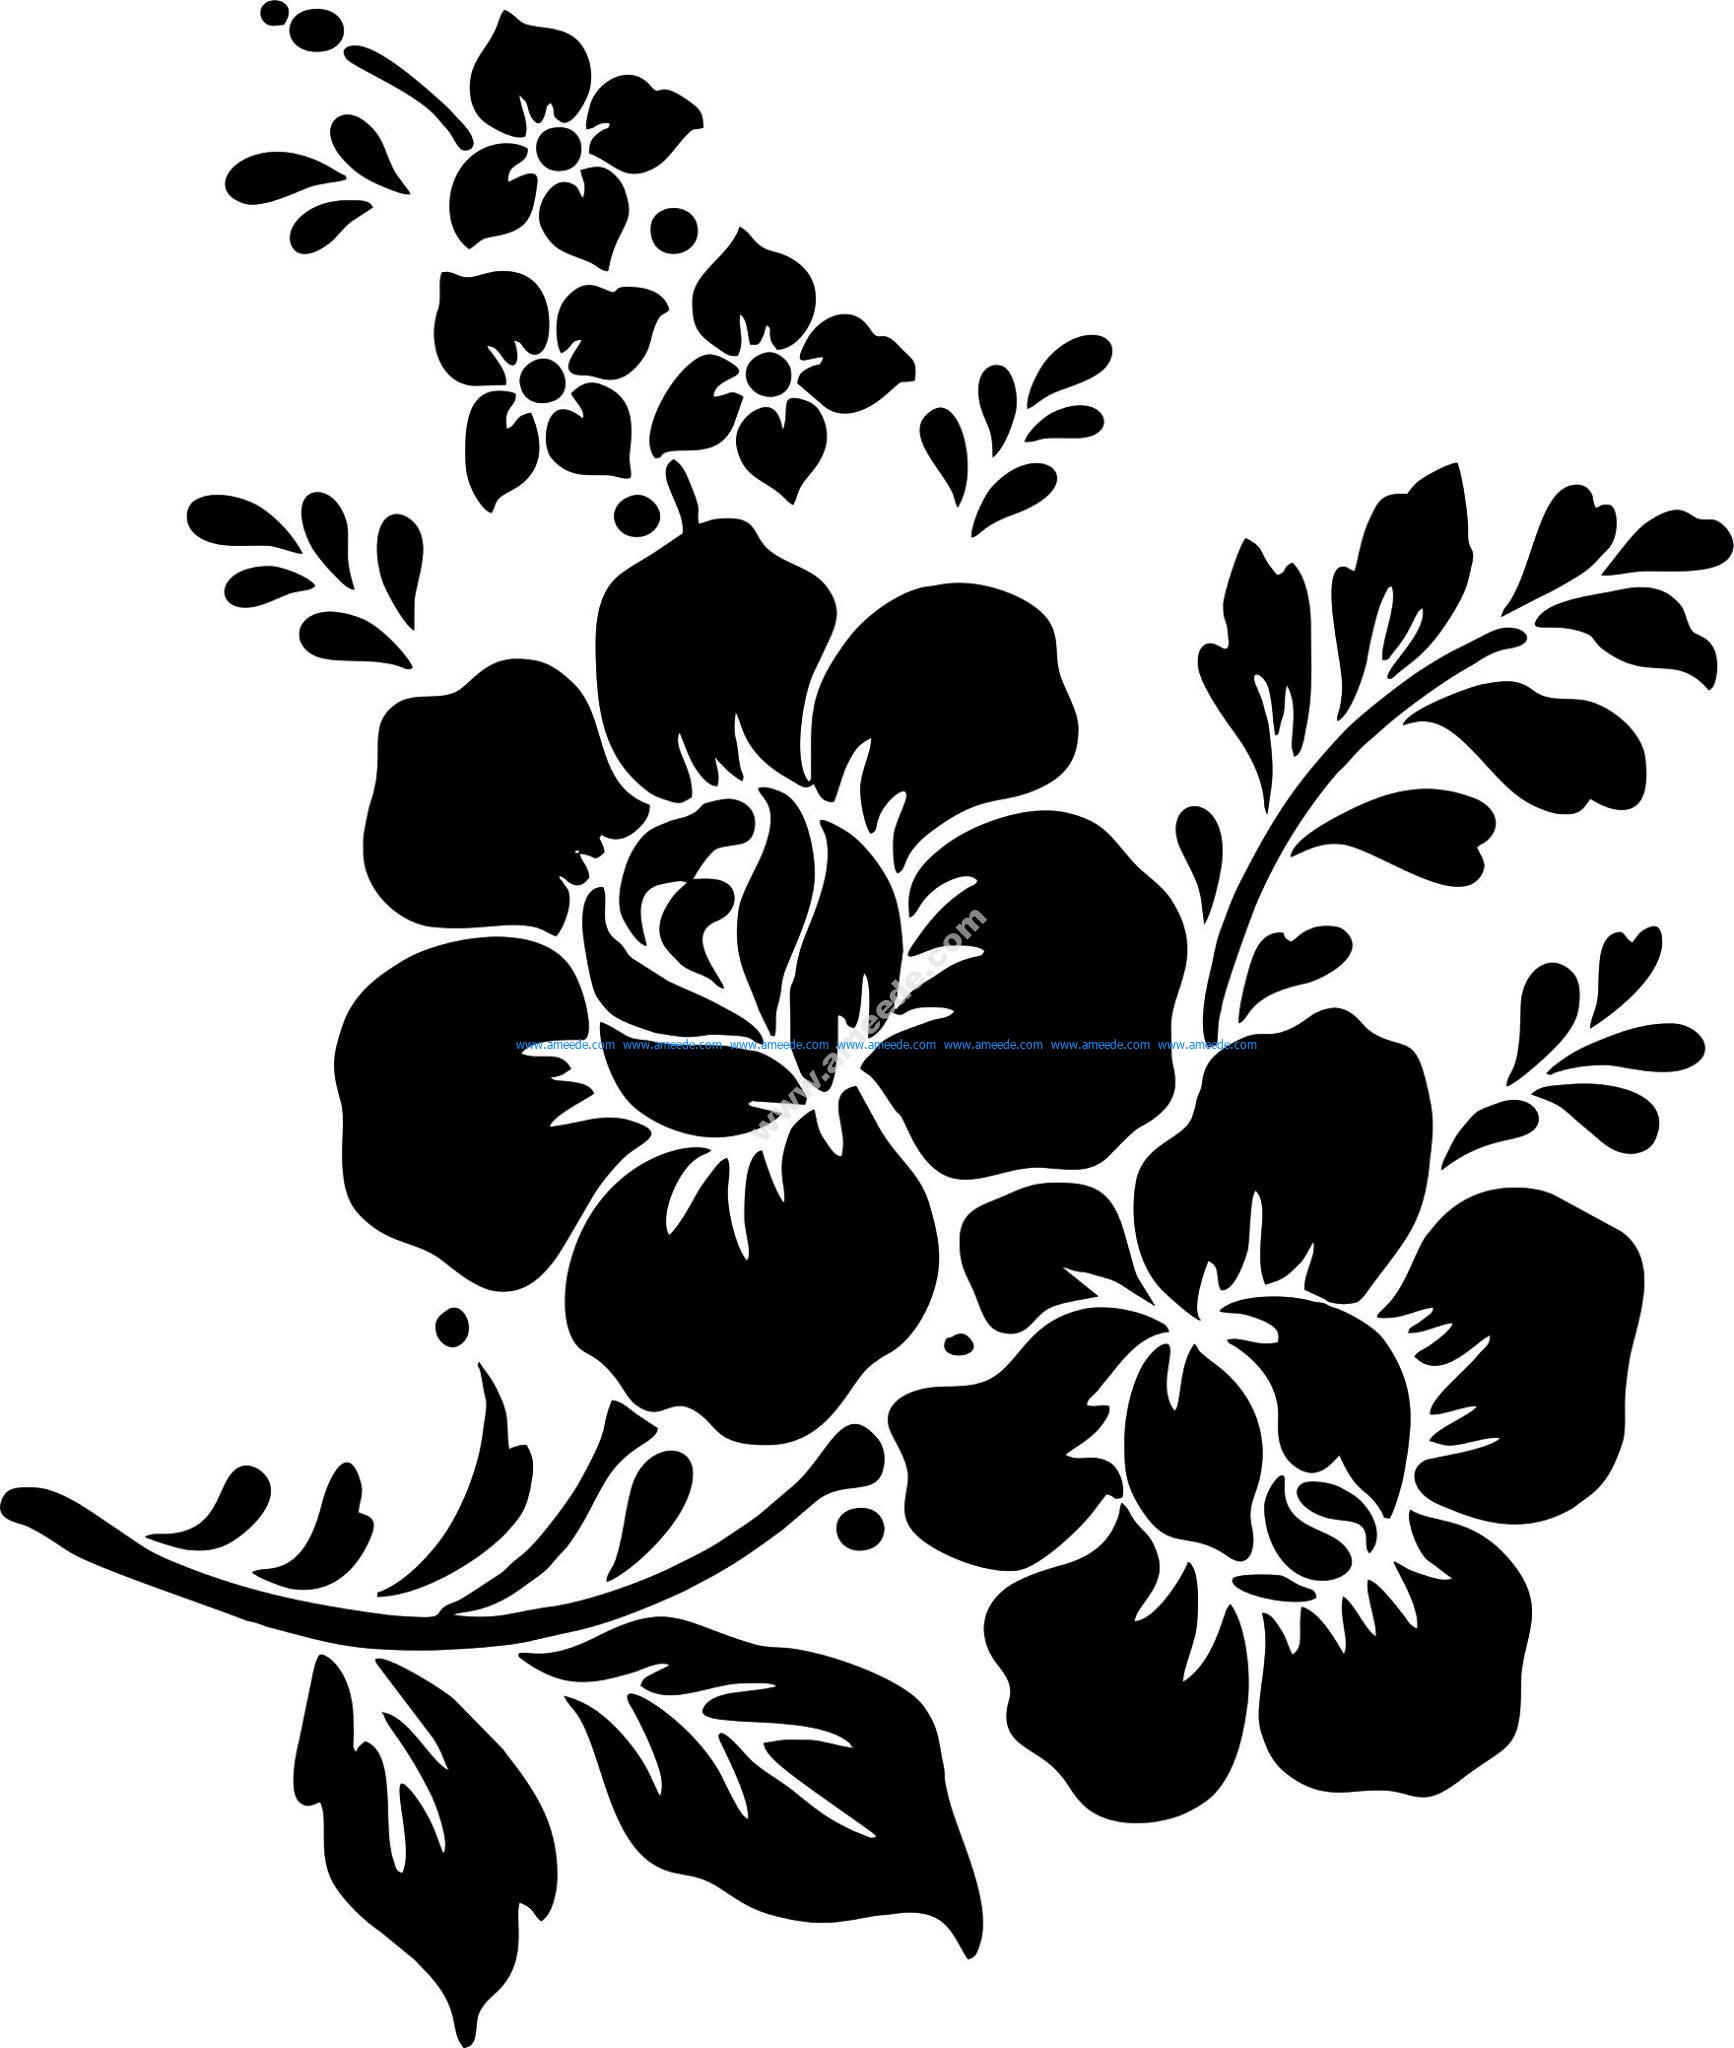 Rose Flower Vector Vector Art jpg Download Vector